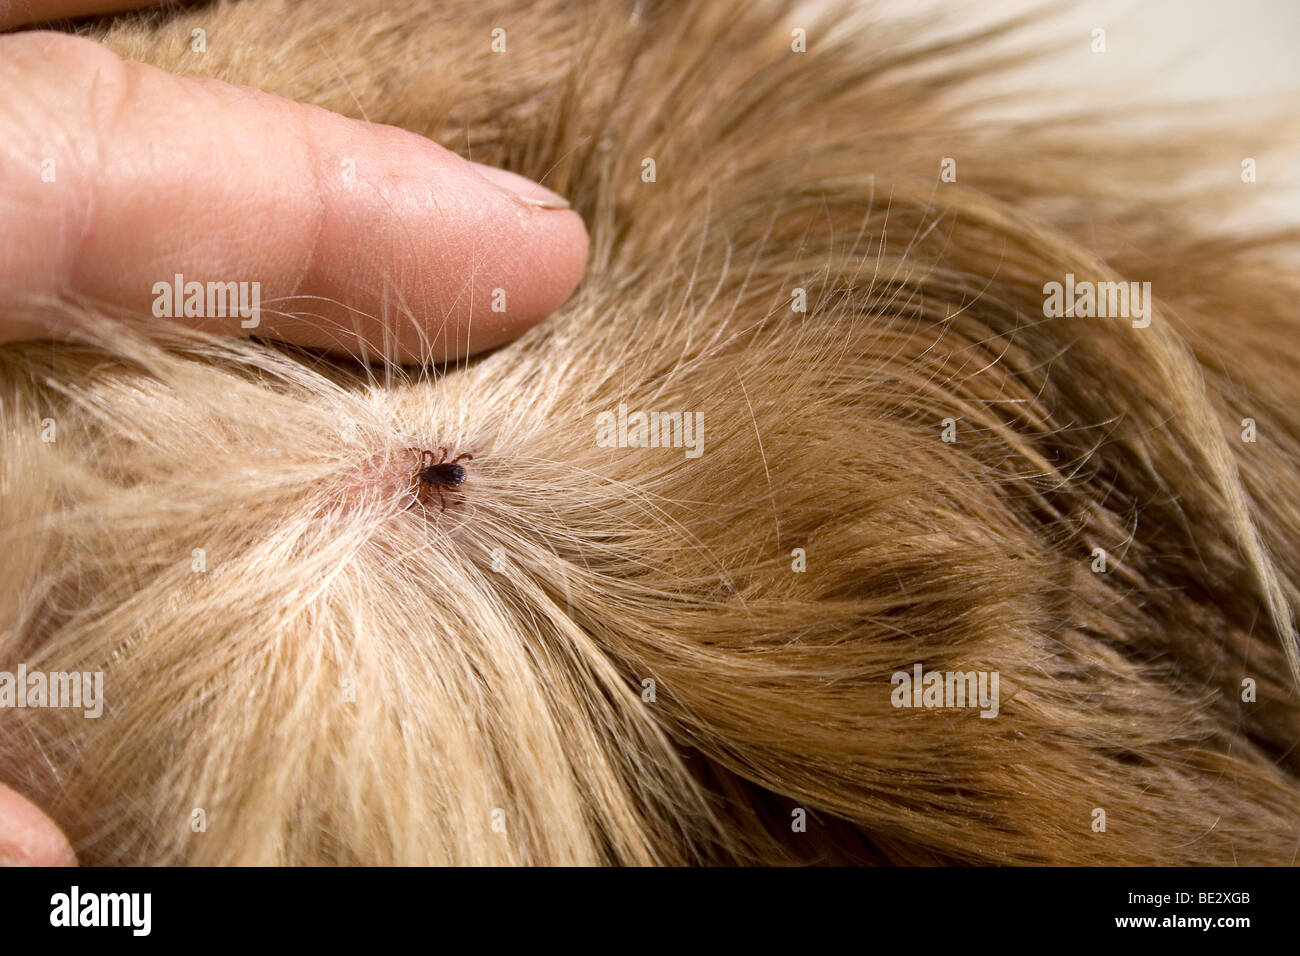 Marque enterrar en el pelo del perro Foto de stock